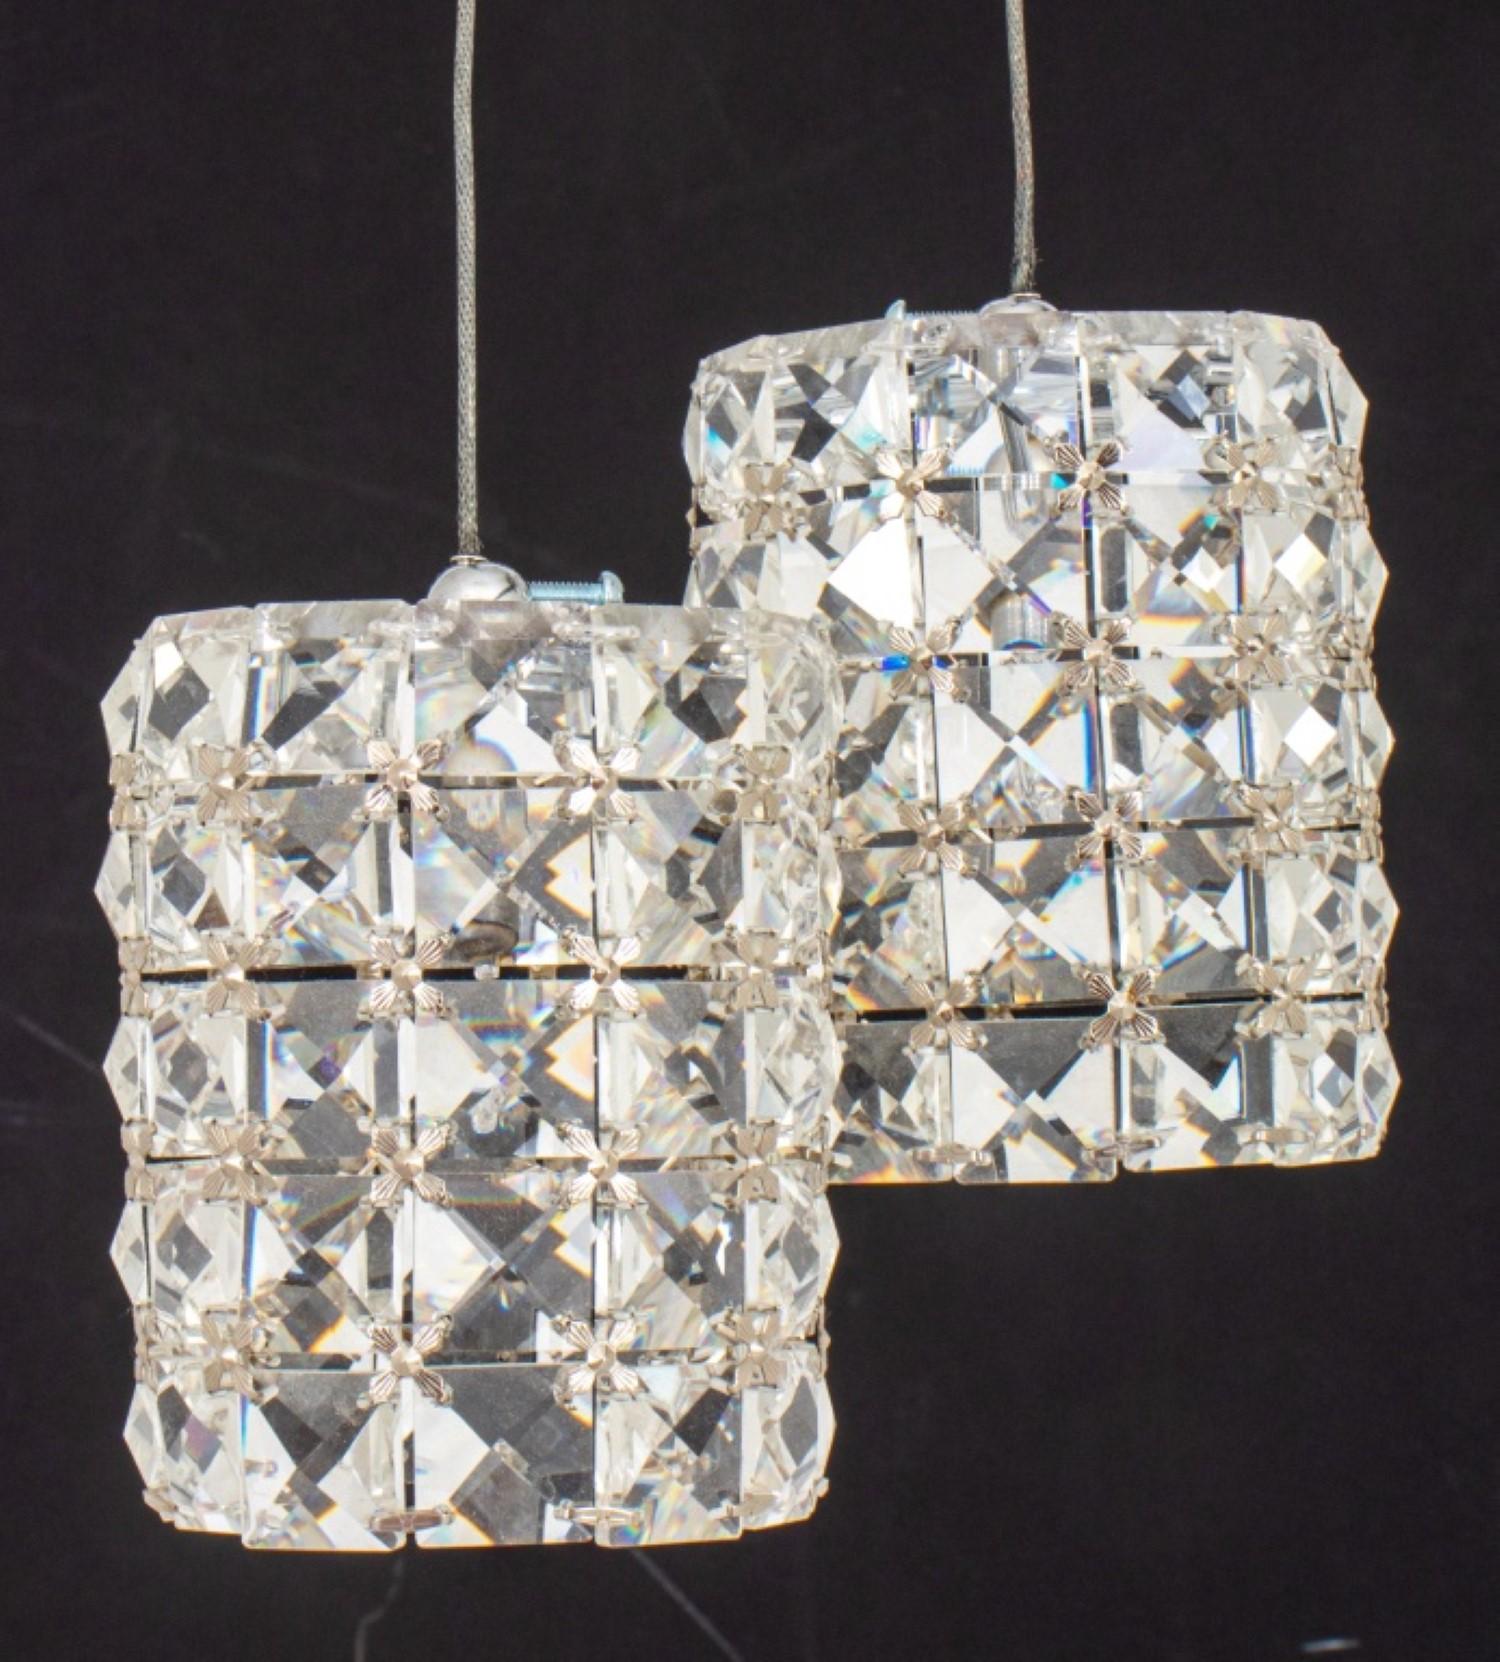 Paar Hollywood Glam Kristall-Anhänger Tropfen  Beleuchtungskörper, mit kugelförmigen verchromten  Schirme mit Pendelleuchten in  Trommelschirme aus Swarovski-Kristall. 

Händler: S138XX

